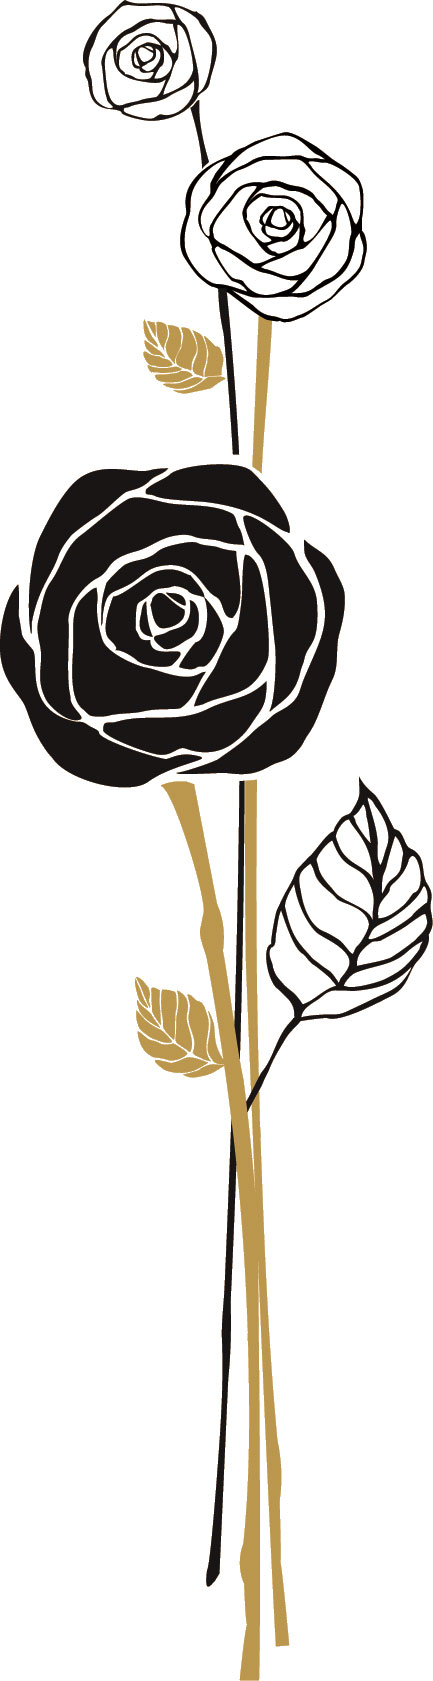 バラのイラスト 画像no 715 切り絵風のバラ 無料のフリー素材集 百花繚乱